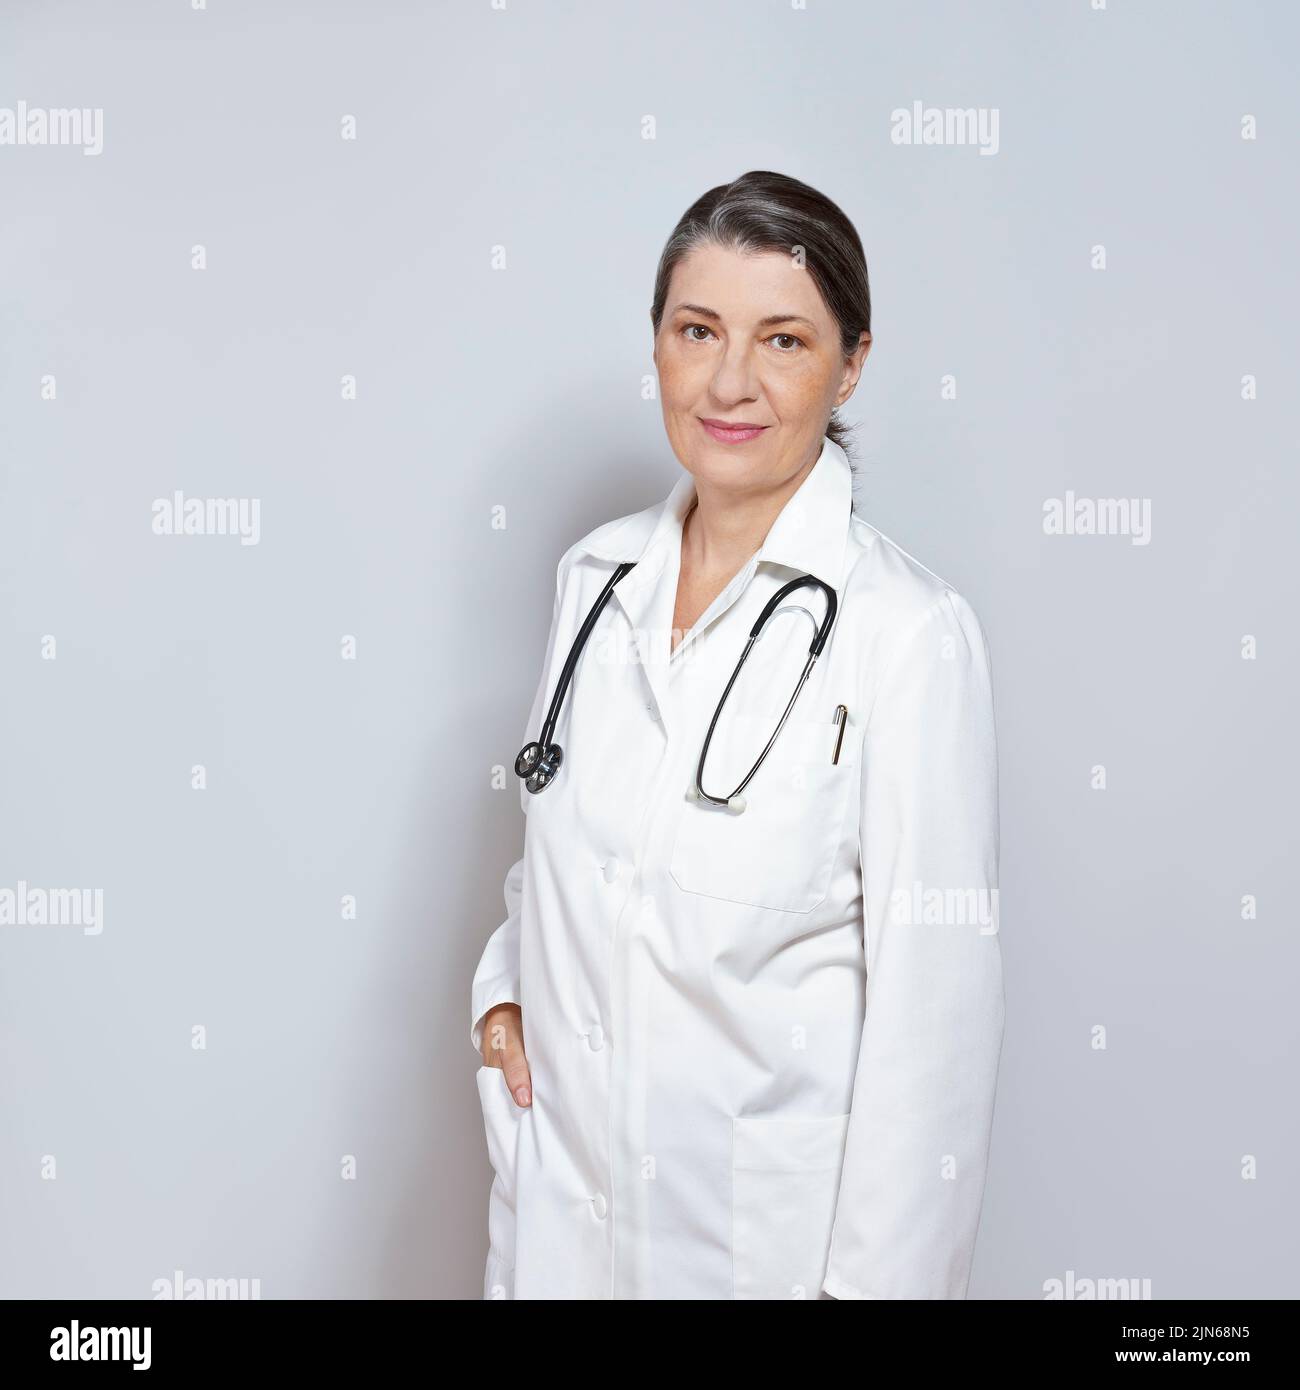 Doctora de mediana edad con bata de laboratorio blanca, sonriente, sobre fondo gris o gris neutro, copia o espacio de texto. Foto de stock